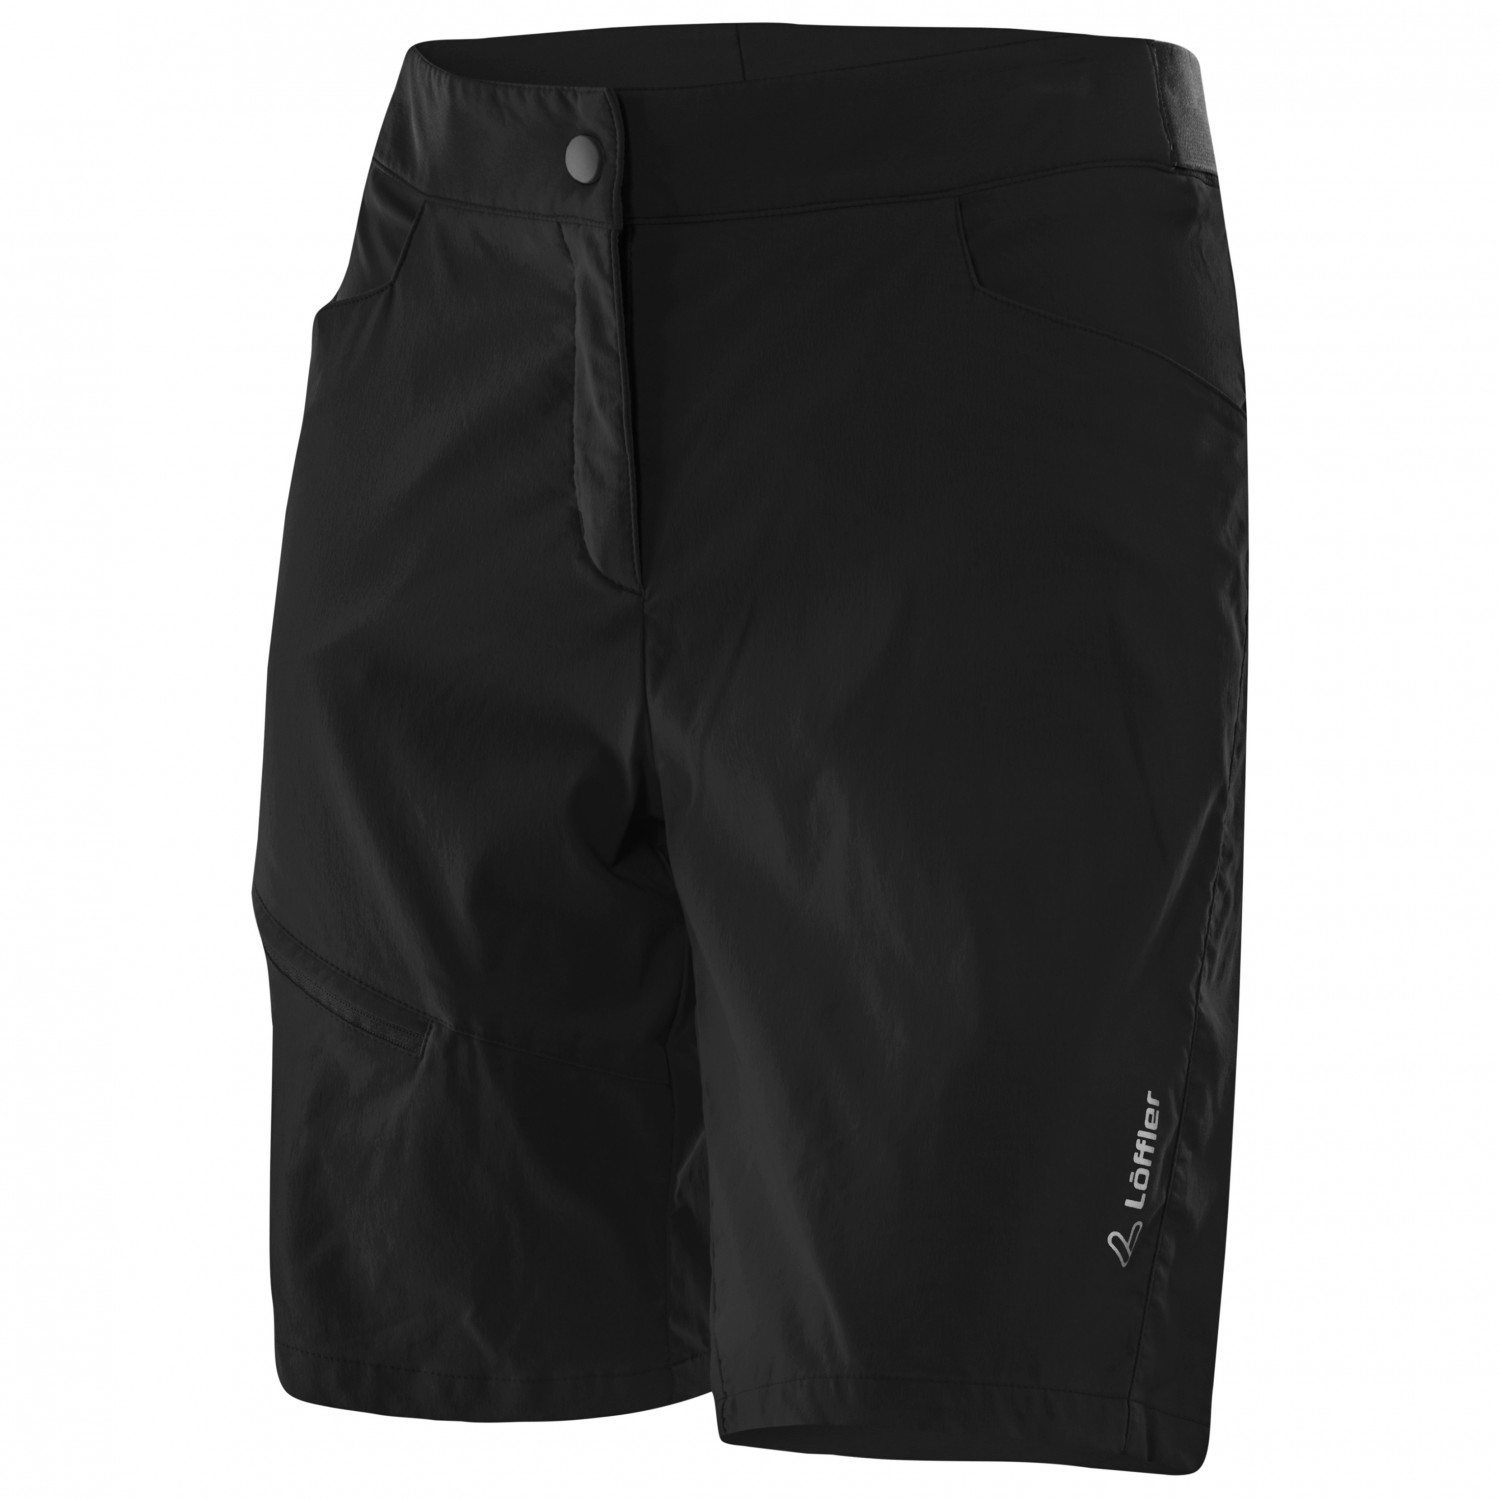 Велосипедные шорты Löffler Women's Bike Shorts Comfort Comfort Stretch Light, черный